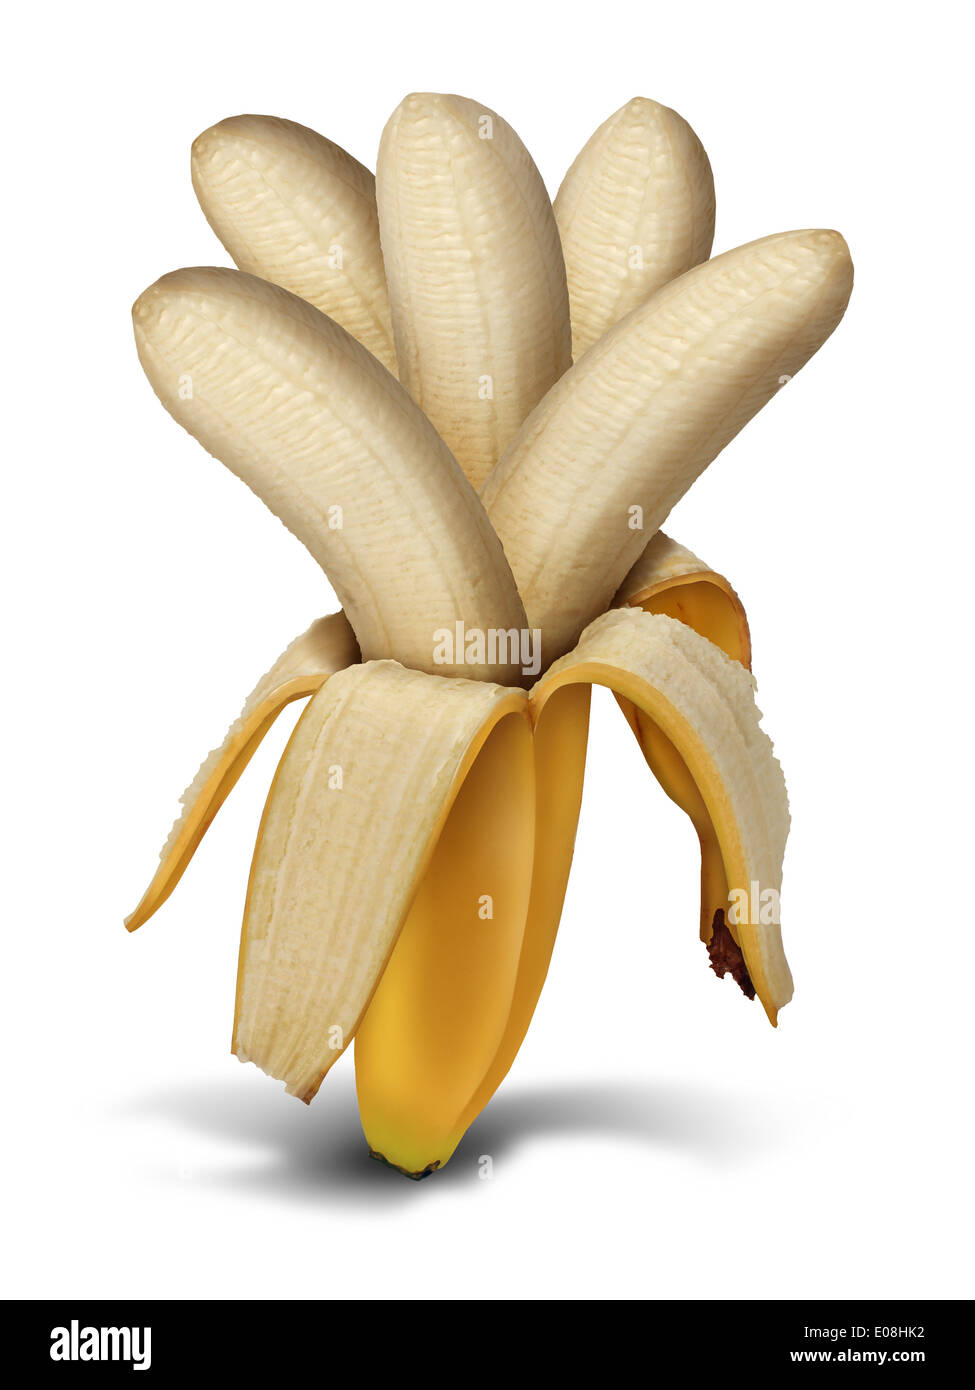 Steigerung Produktionskonzept und Ernte ergeben als Landwirtschaft Lebensmittel Entwicklung Symbol als offene geschälte Banane mit einer Gruppe von mehreren Fruchtfleisch als Metapher für Gewinne zurück und Zinsen und Zinseszinsen Ergebnis wächst. Stockfoto